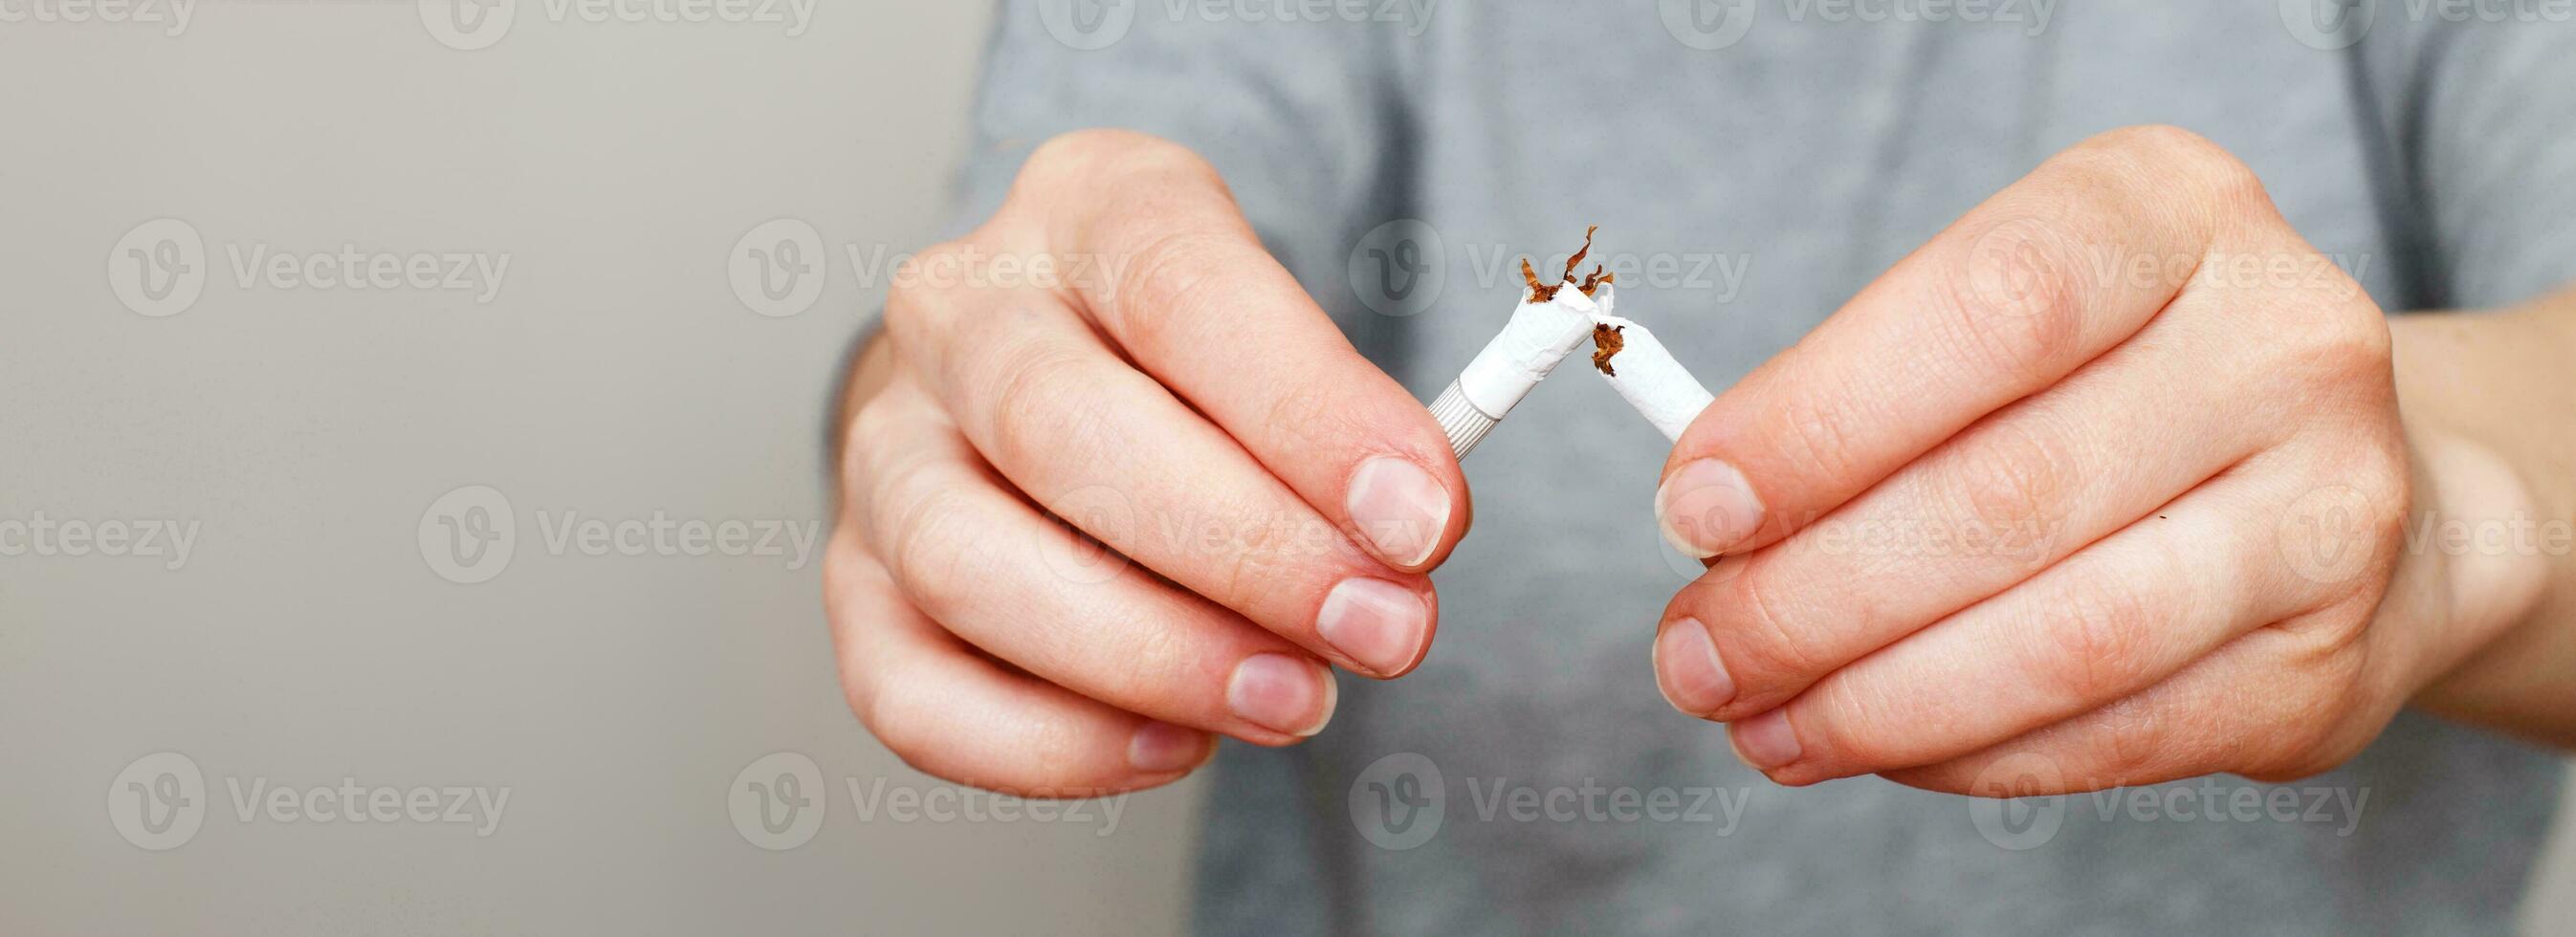 ung kvinna innehav bruten cigarett i henne händer stäng.banner foto